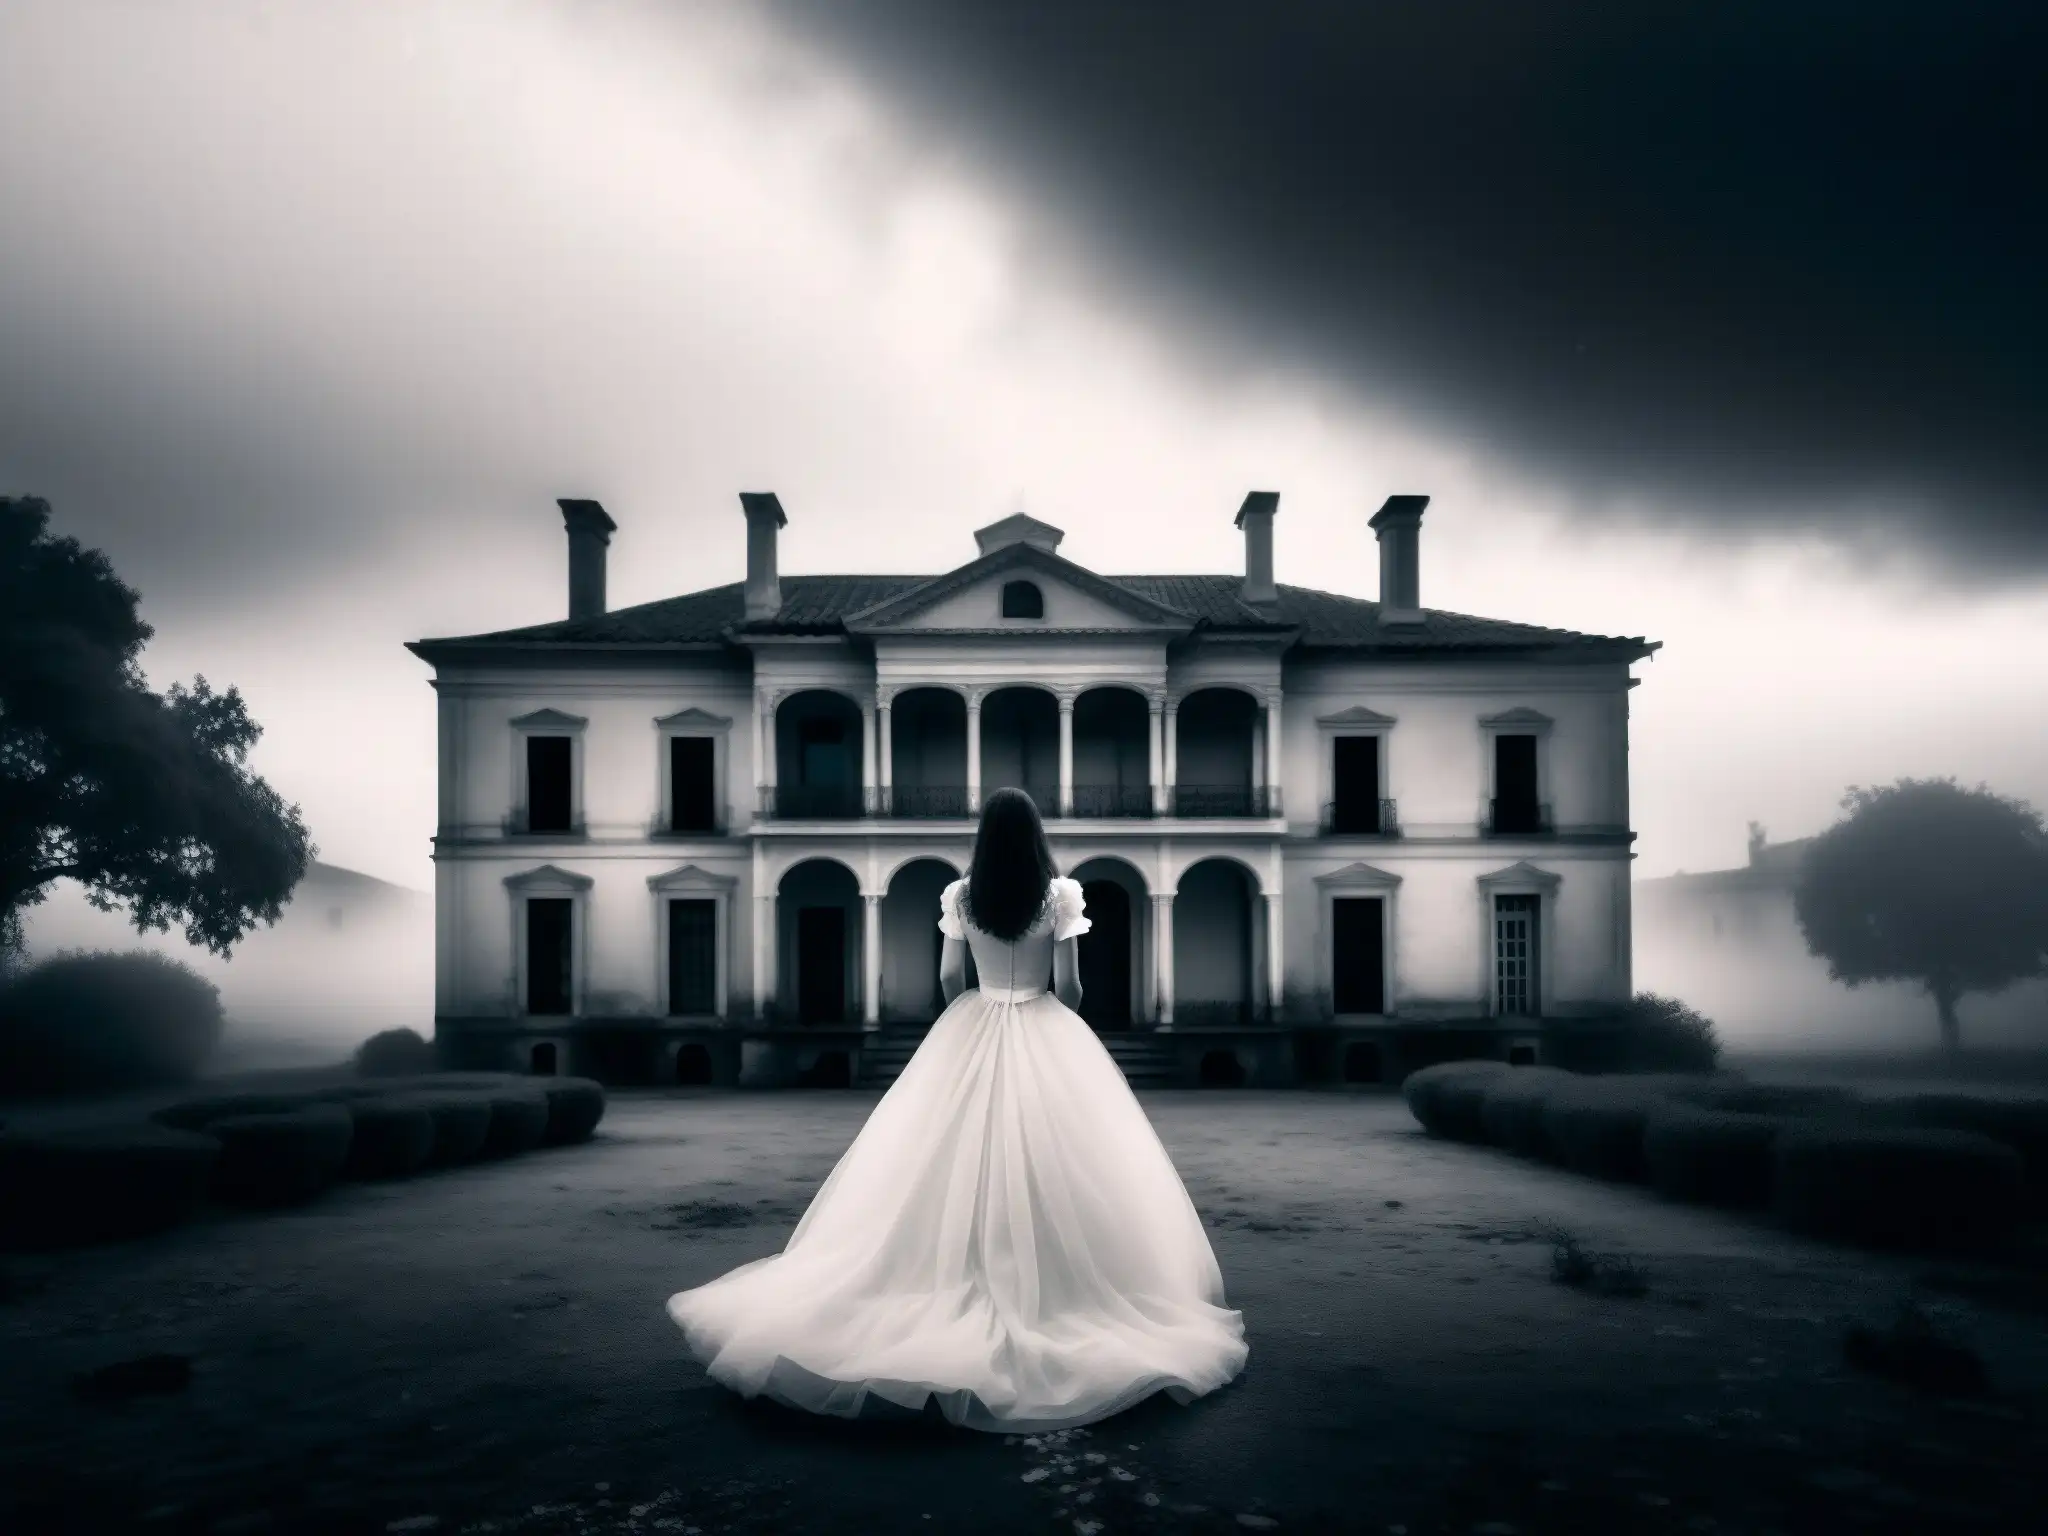 La misteriosa Dama de Blanco se alza en la neblina frente a la mansión abandonada, evocando el mito urbano con un aire de intriga